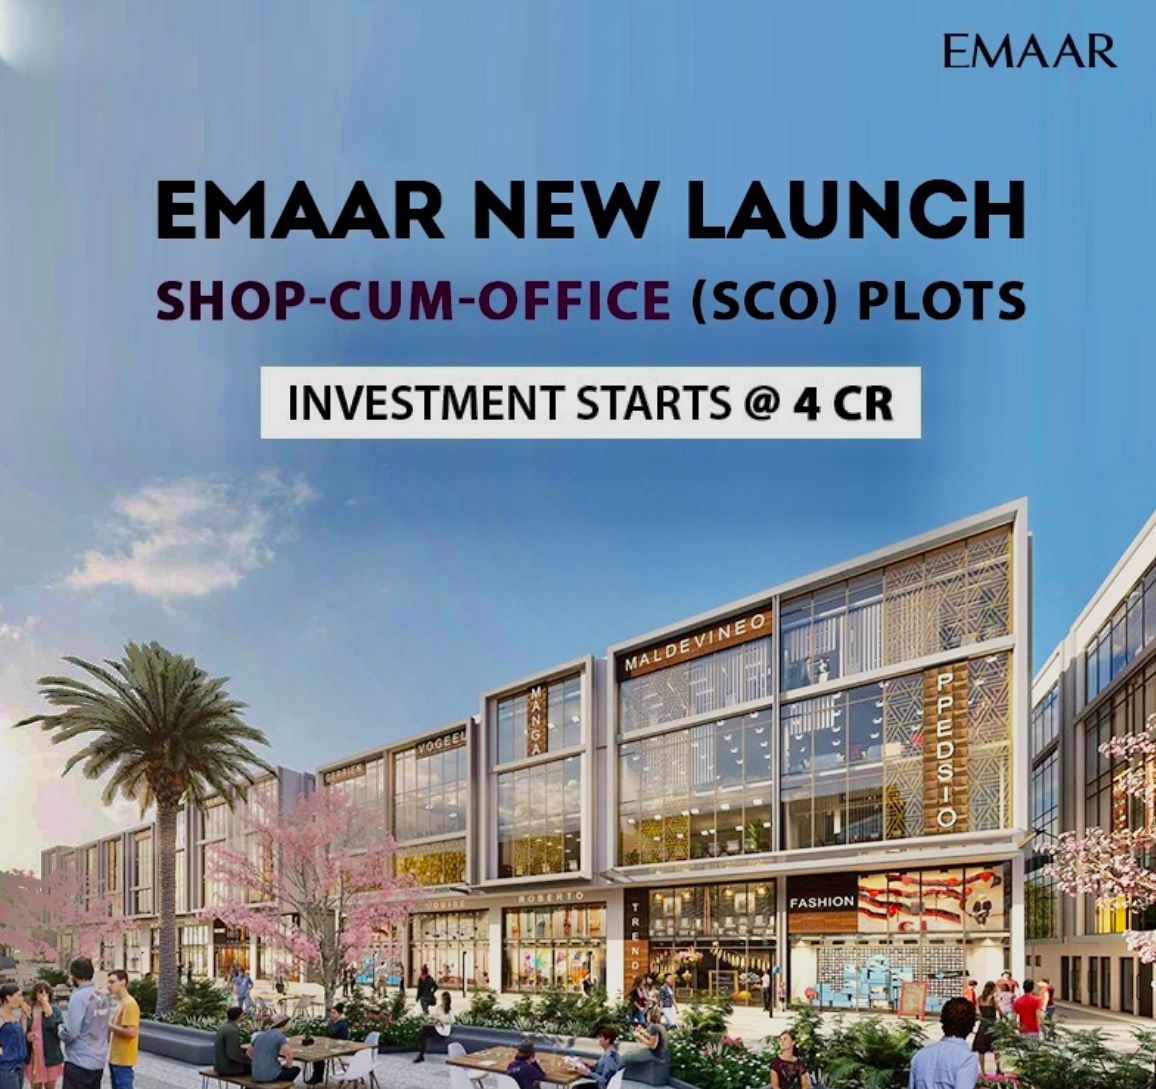 Emaar SCO Plots: A New Era of Commercial Opportunities in Emaar Business District 83 Update